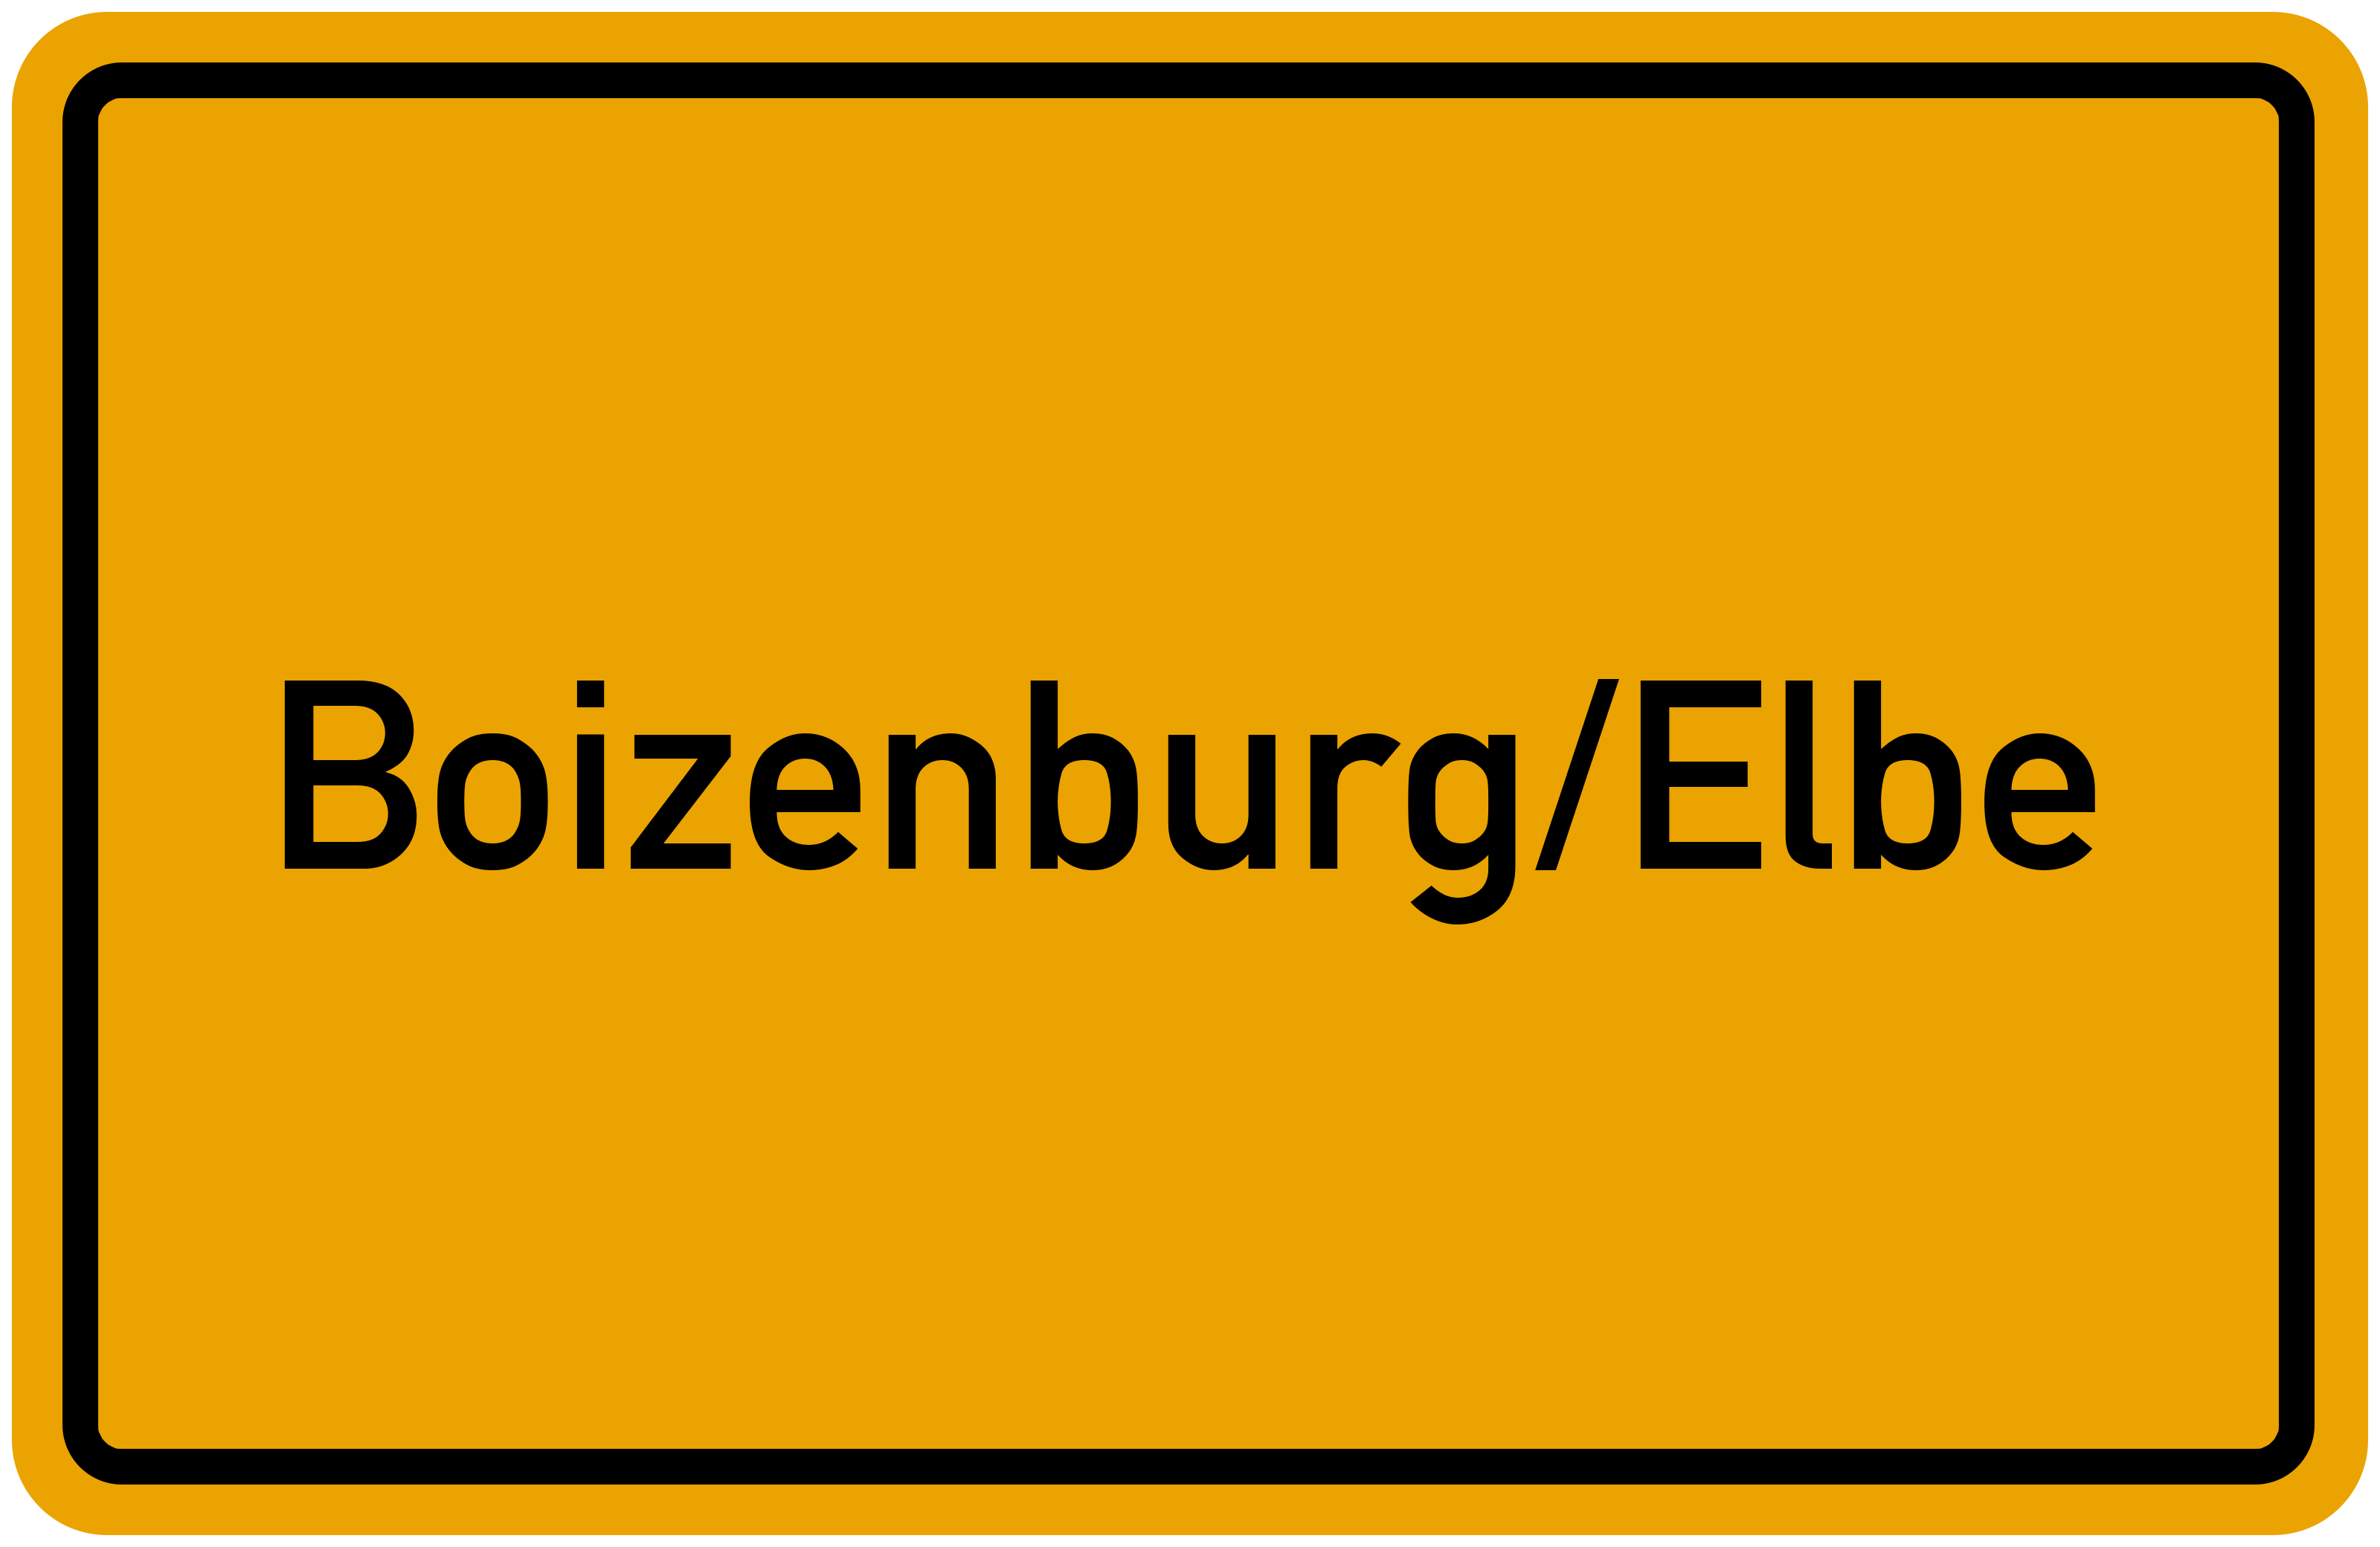 Ortsschild Boizenburg/Elbe kostenlos: Download & Drucken